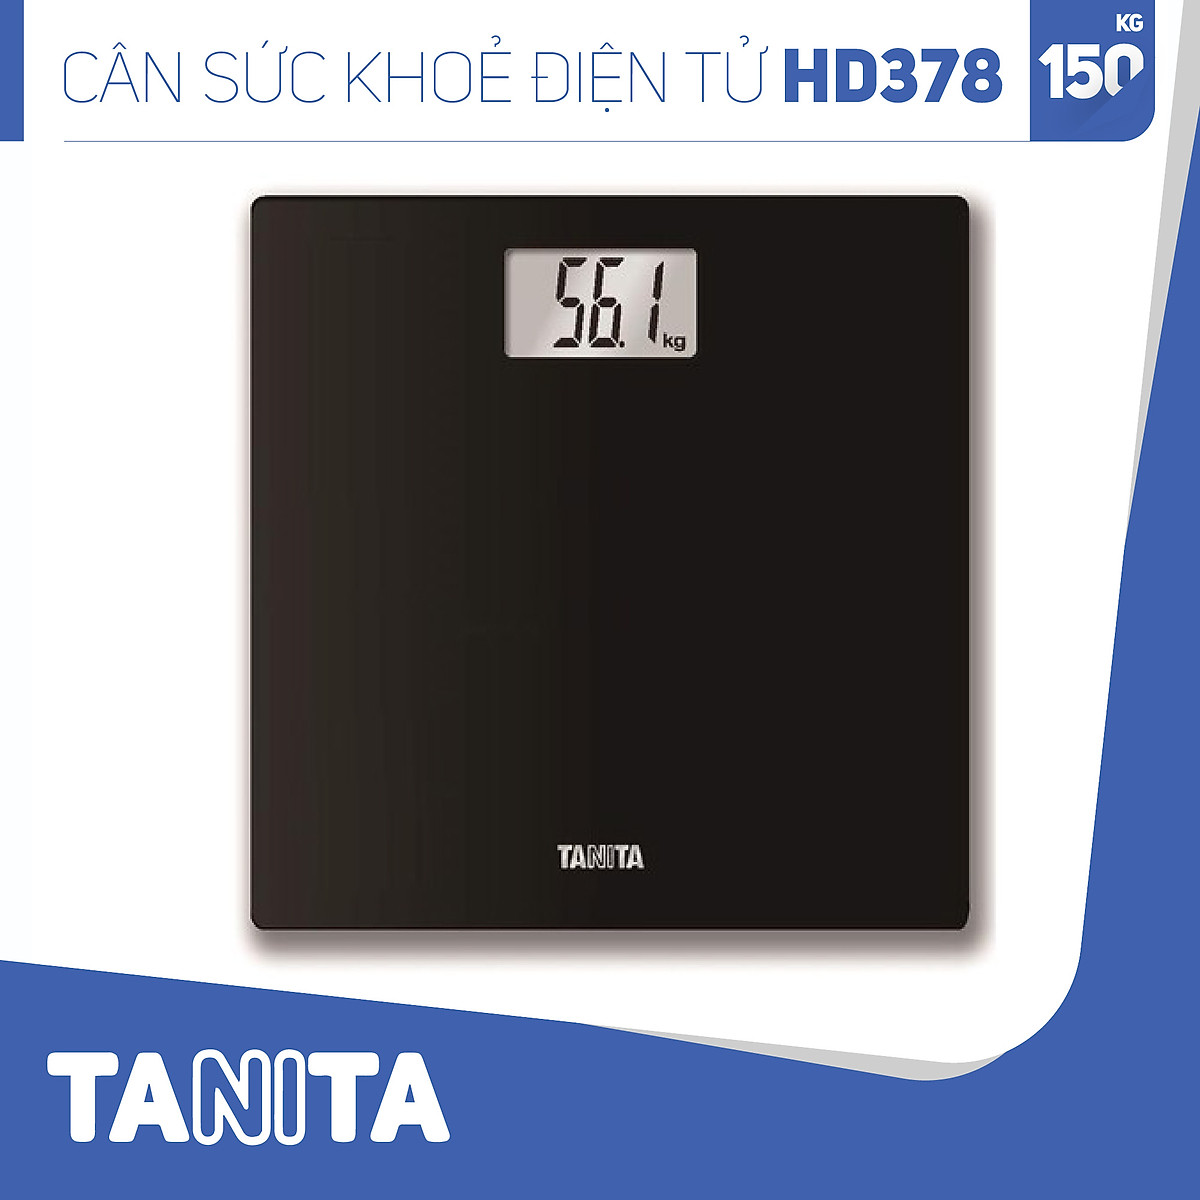 Cân sức khoẻ điện tử Tanita HD378 Nhật Bản, Cân tanita, chính hãng nhật bản,cân điện tử,cân chính hãng,cân nhật bản,cân sức khoẻ y tế,cân sức khoẻ gia đình,cân sức khoẻ cao cấp,cân 120kg,cân 130kg,cân 150kg,Cân sức khoẻ mini